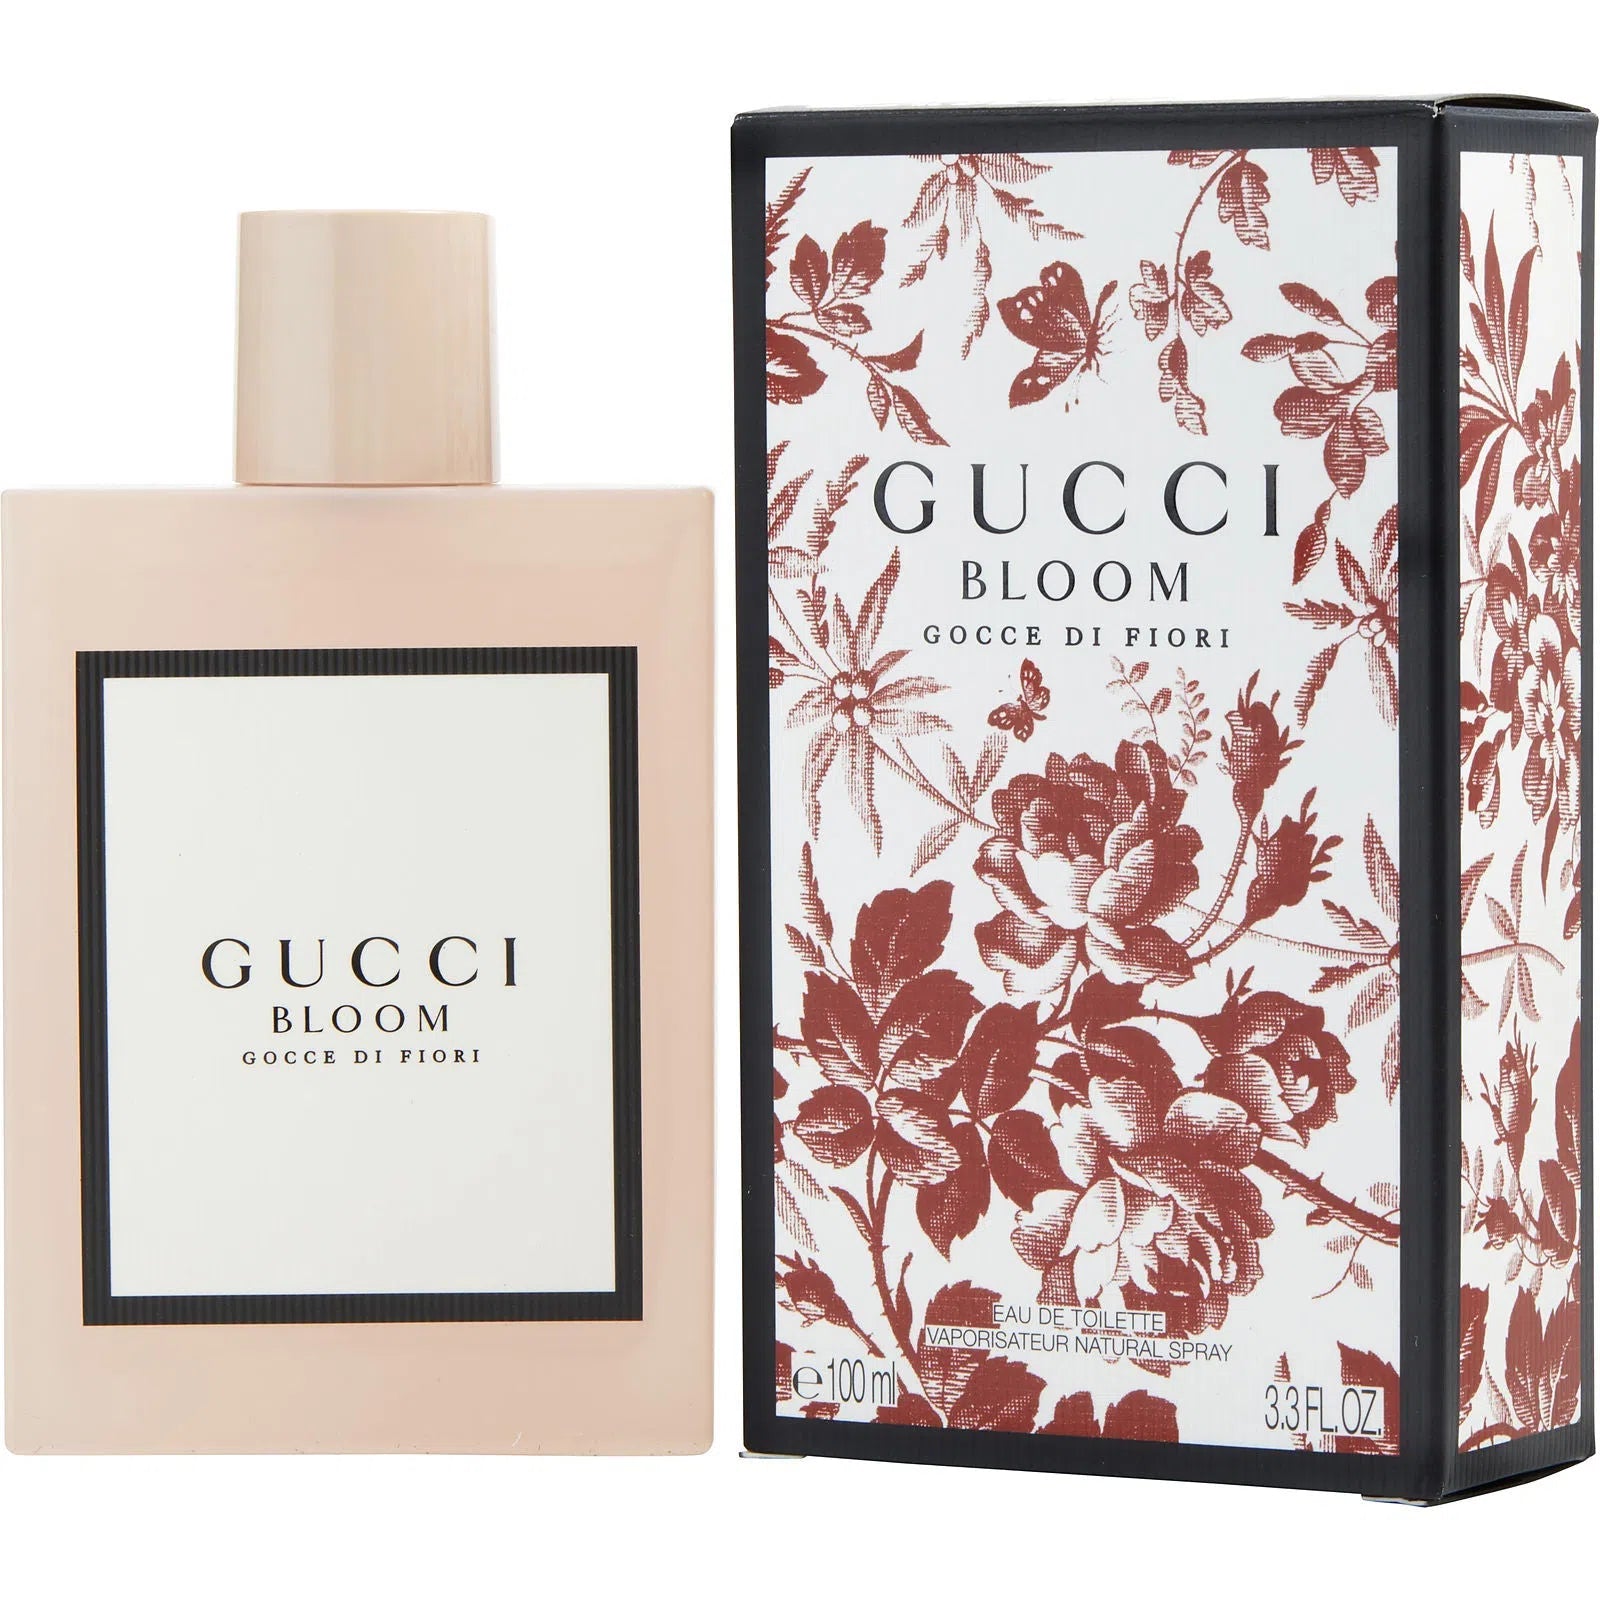 Perfume Gucci Bloom Gocci Di Fiori EDT (W) / 100 ml - 3614225307034- Prive Perfumes Honduras